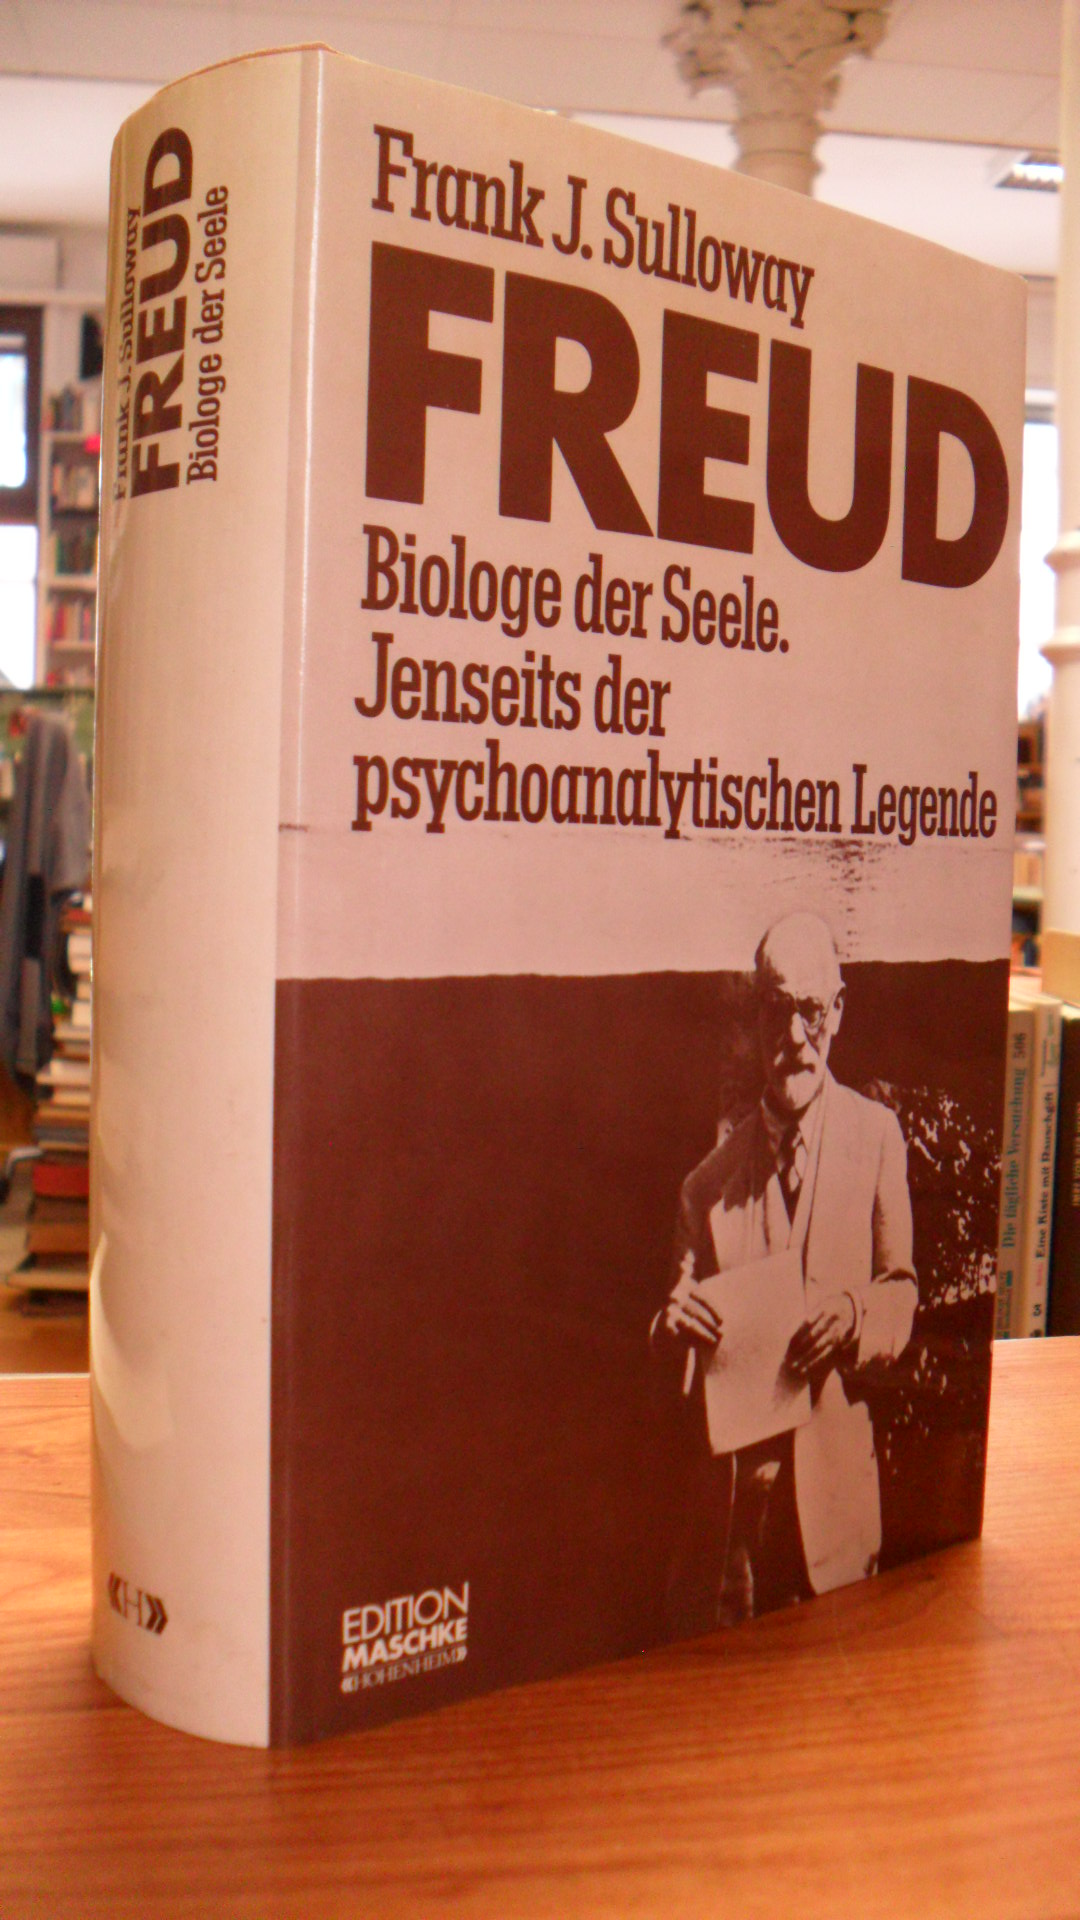 Sulloway, Freud – Biologe der Seele – Jenseits der psychoanalytischen Legende,